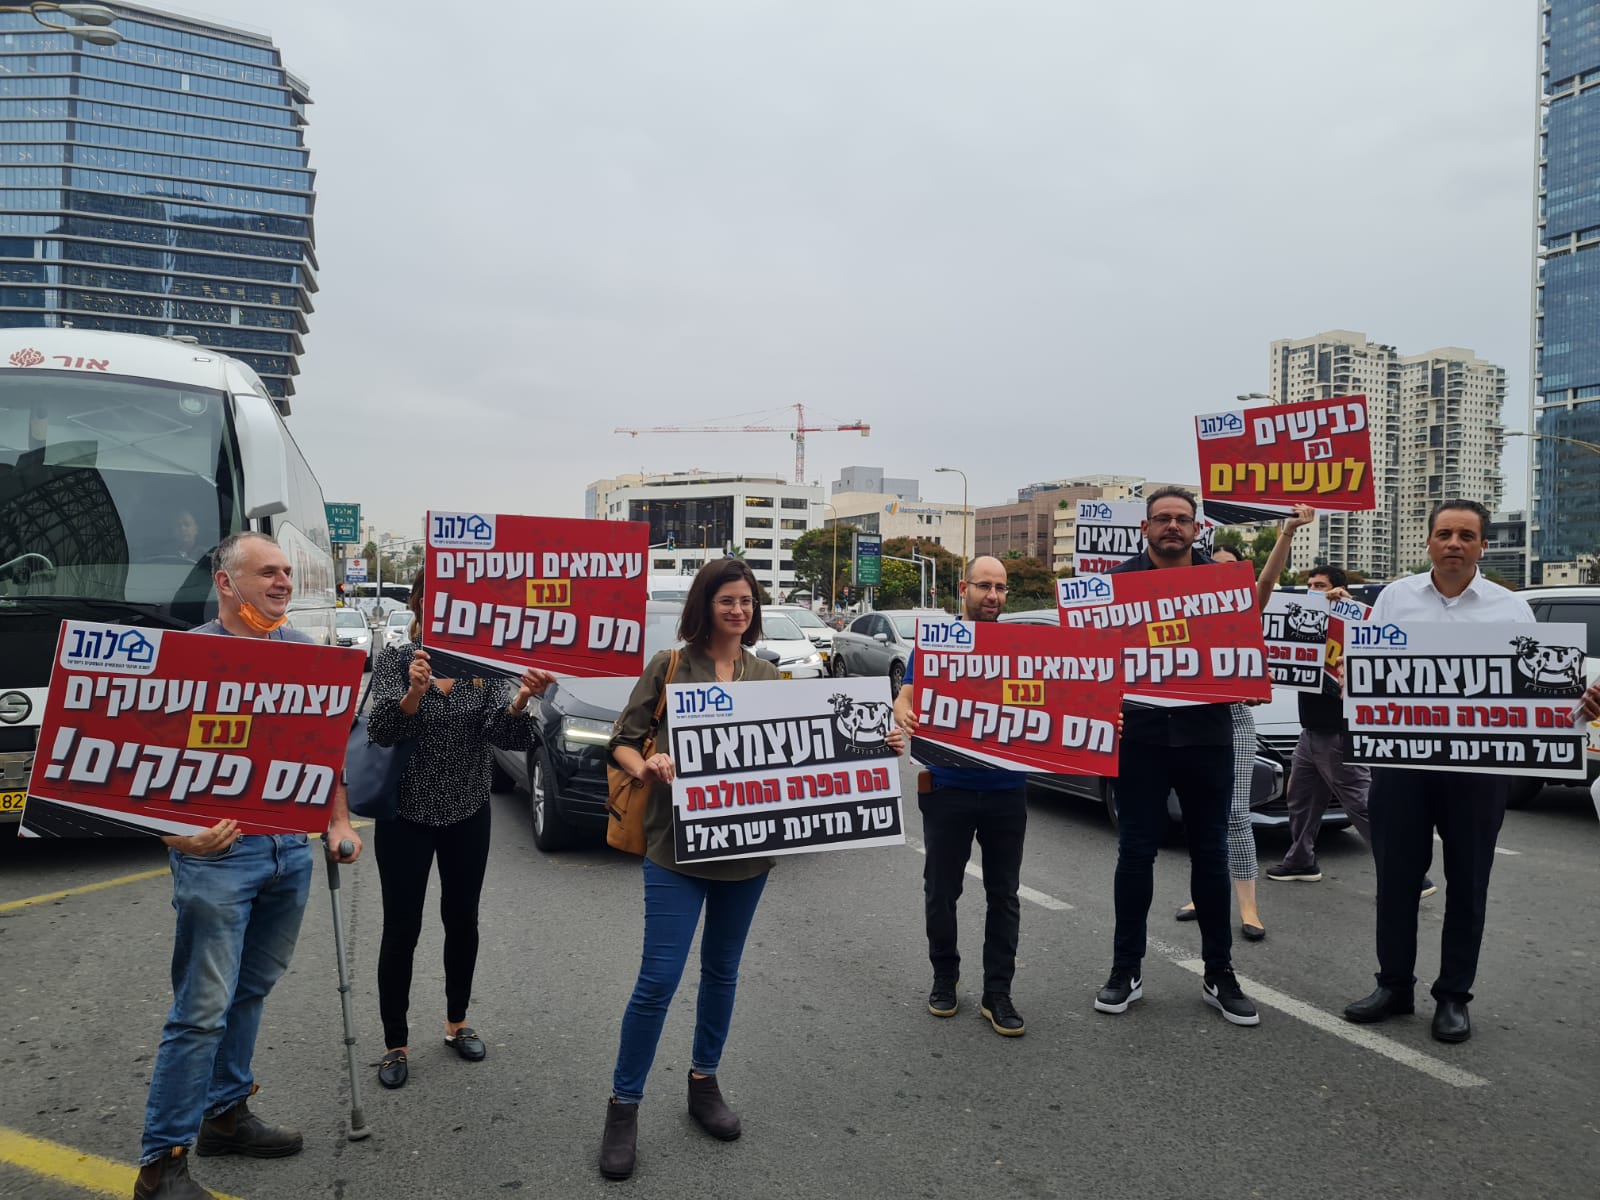 עצמאים ובעלי עסקים חוסמים את צומת עזריאלי בתל אביב במחאה על מס הגודש (צילום: הדס יום טוב)